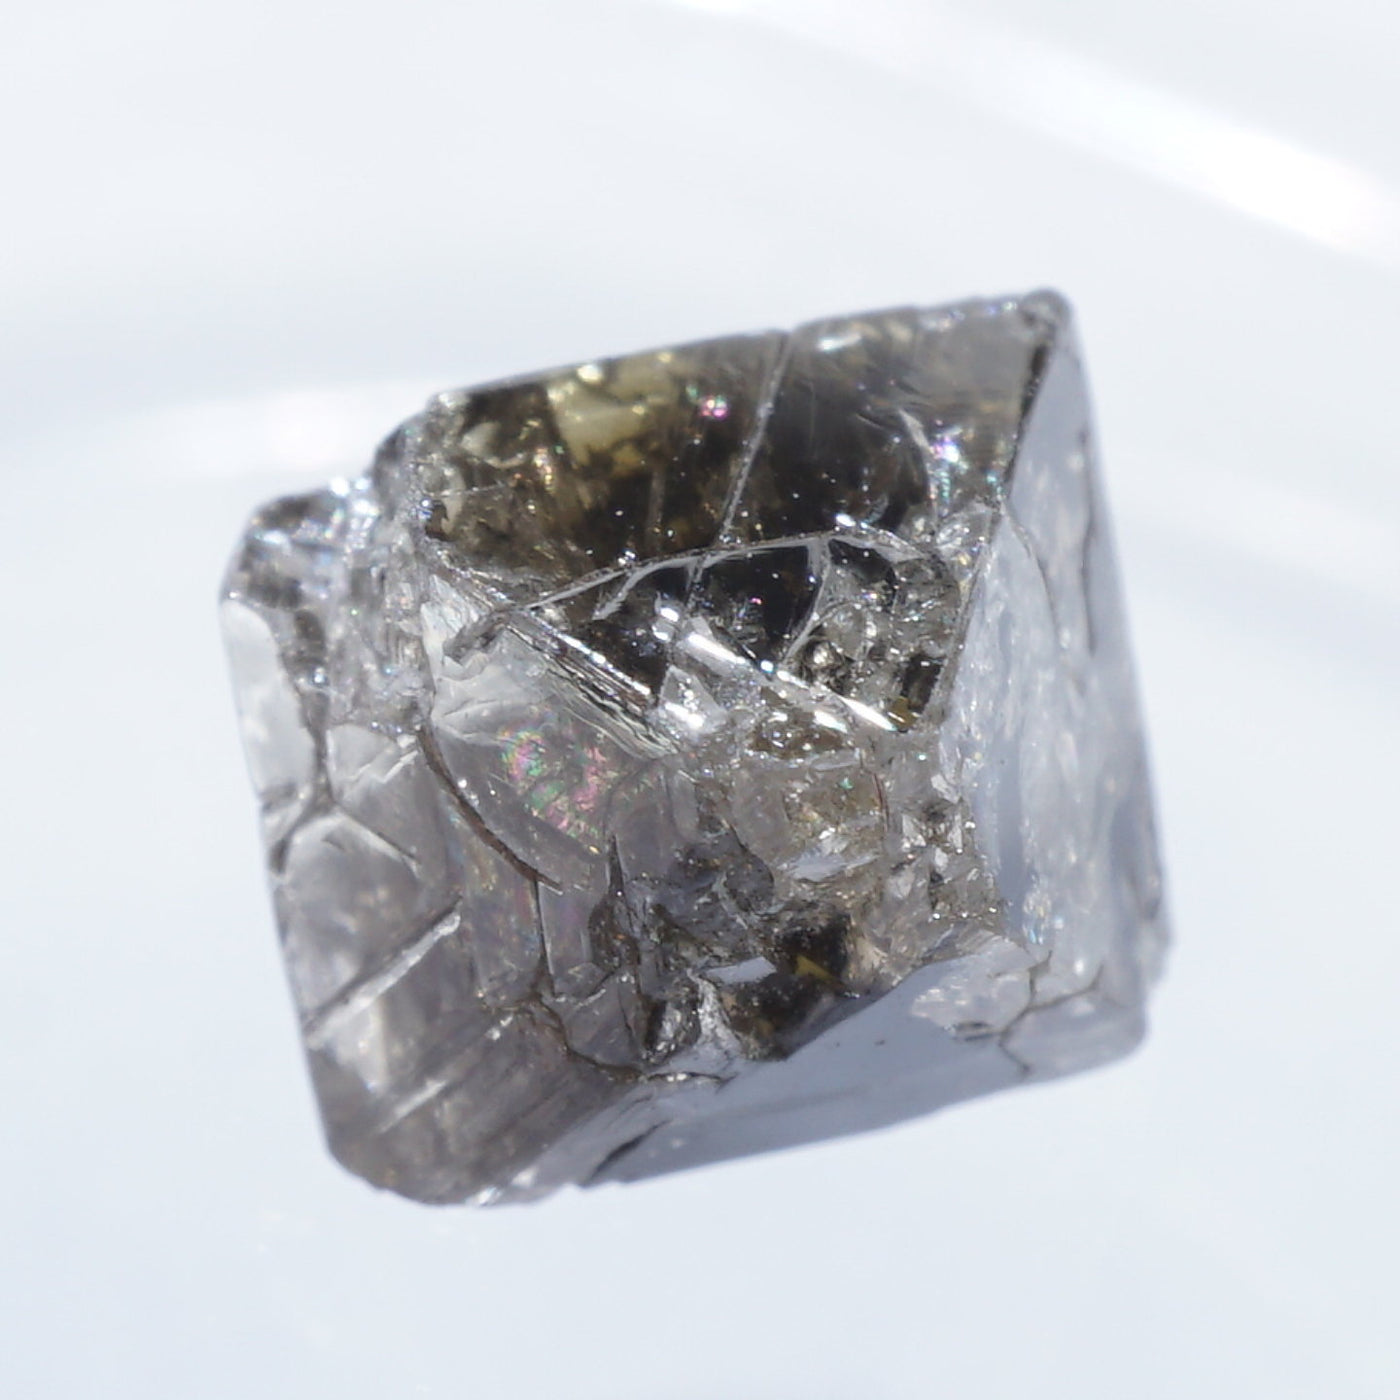 コンゴ産 ダイヤモンド原石 (Diamond) – 天然石ハッピーギフト